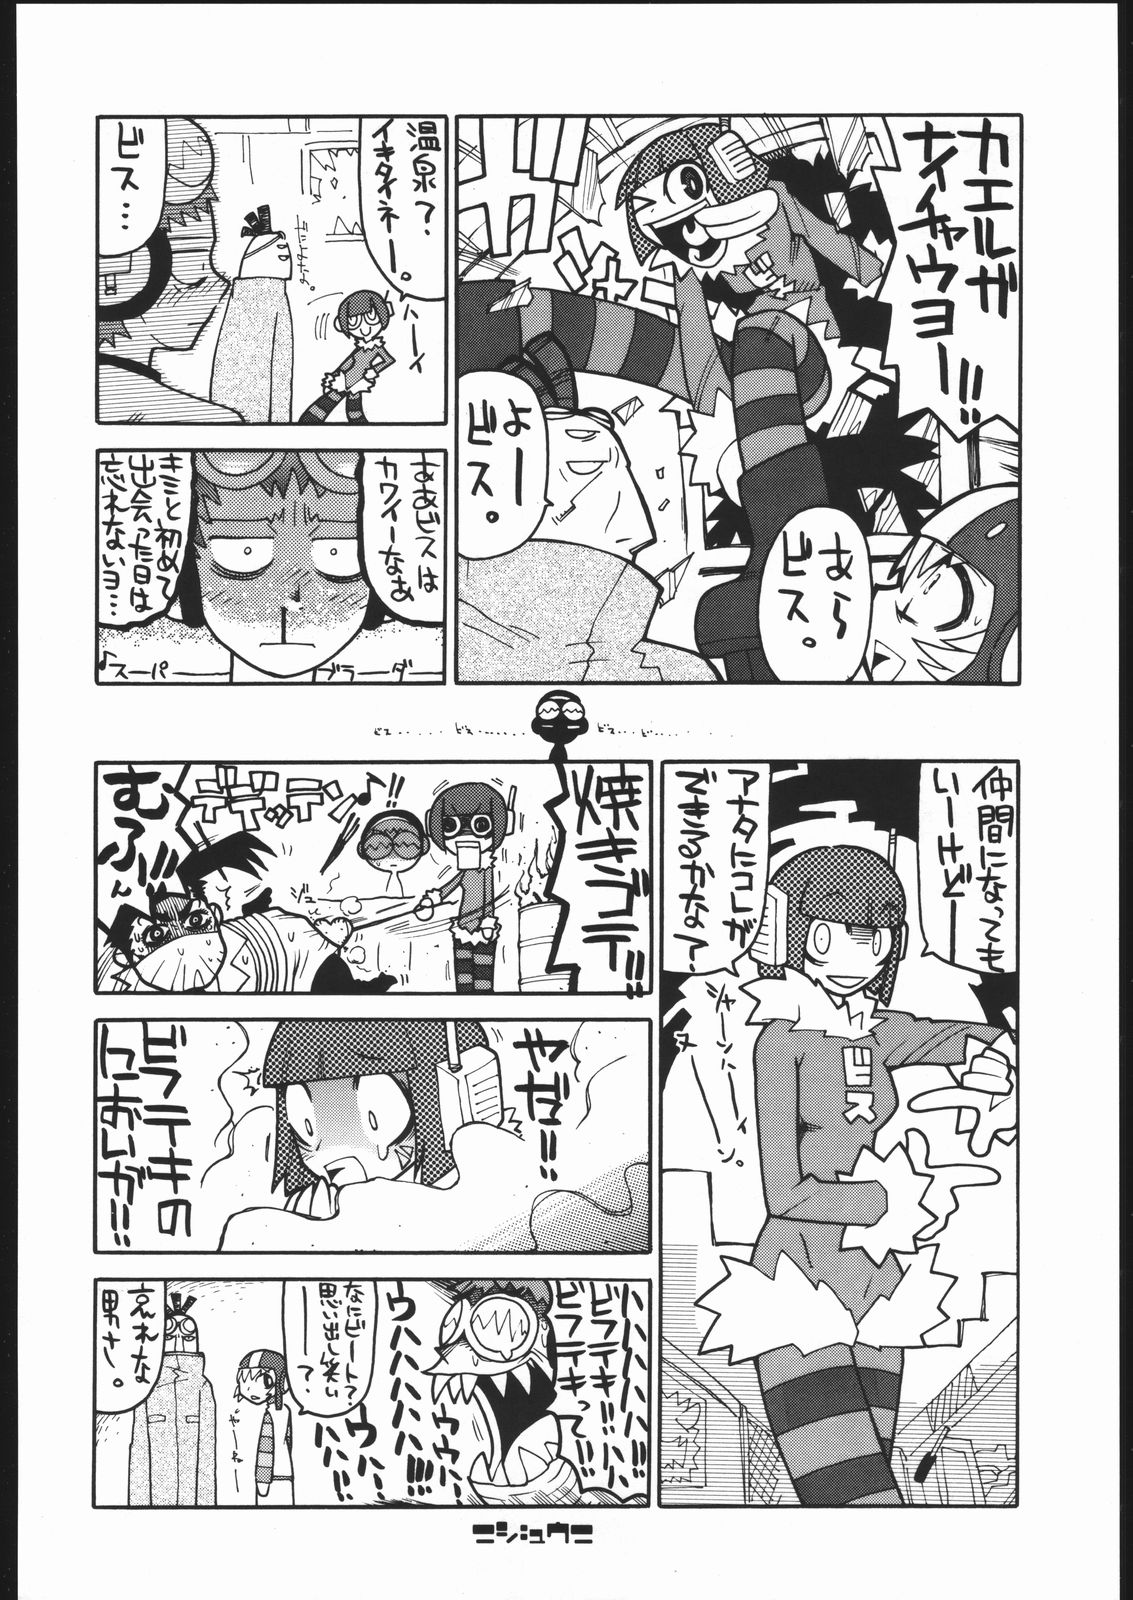 [Jet Set Radio] Radical Gadget (Bakushiishi) page 21 full